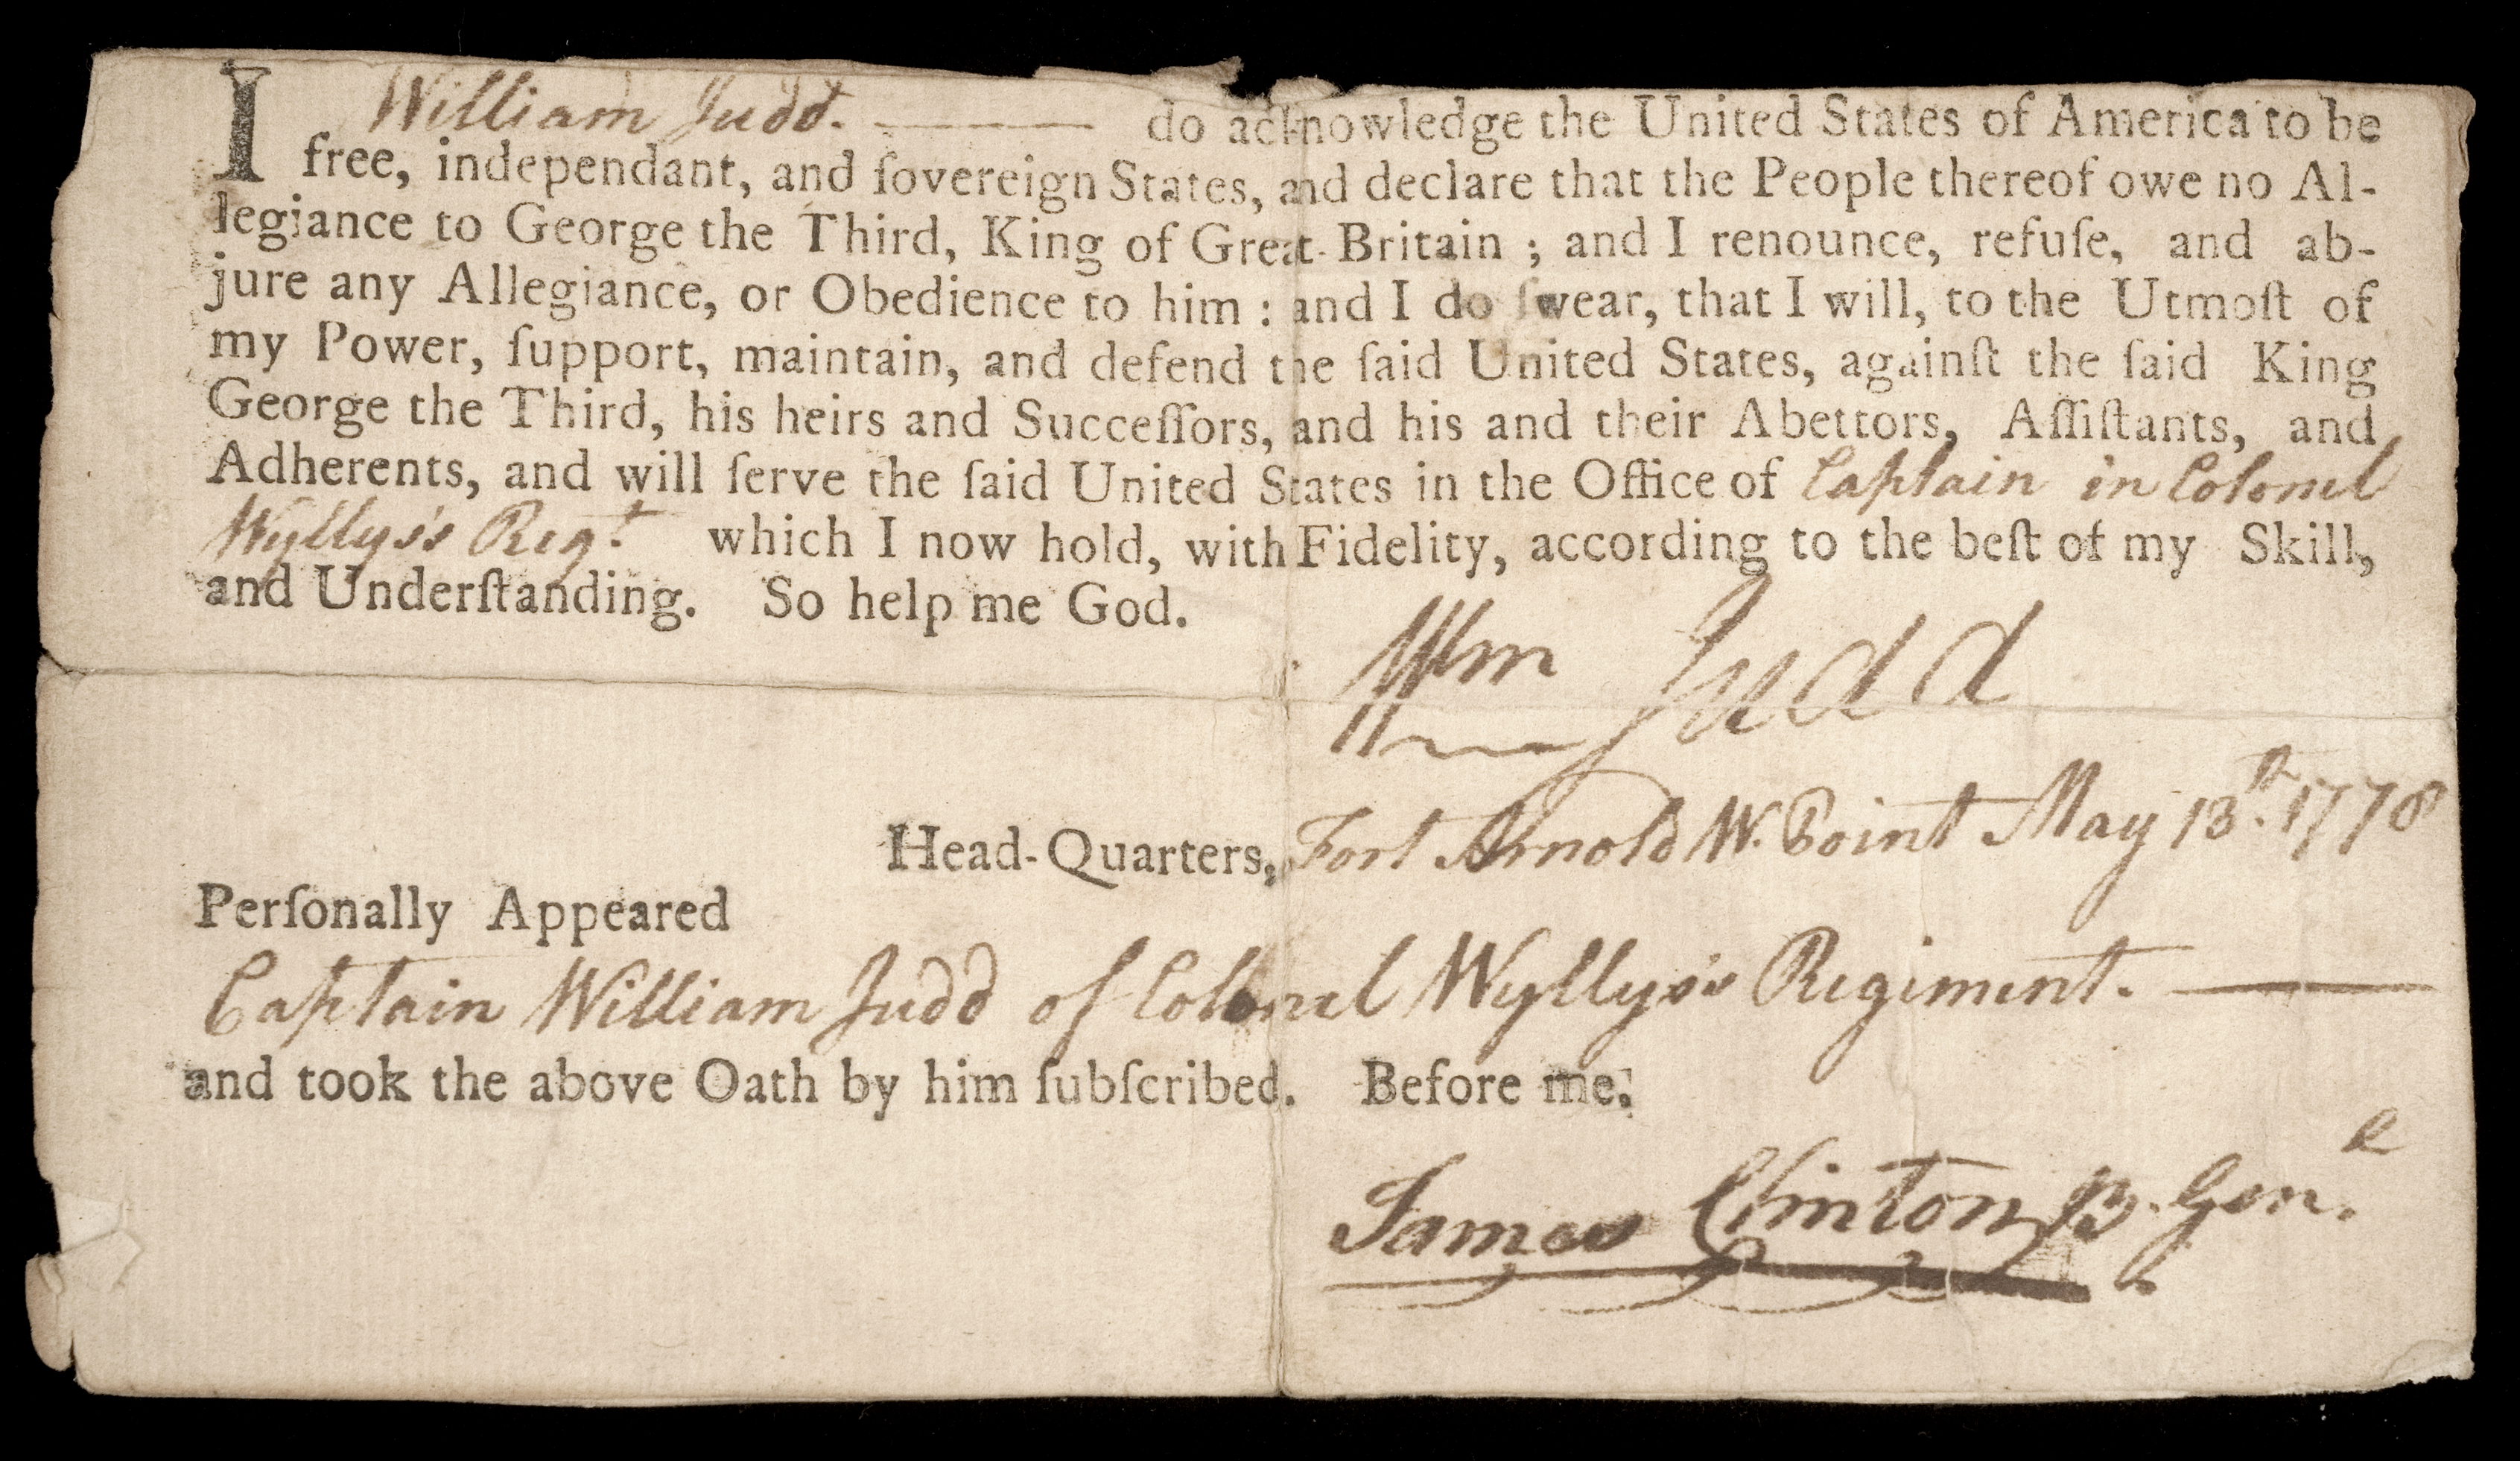 William Judd oath of allegiance MSS L2010G28.22